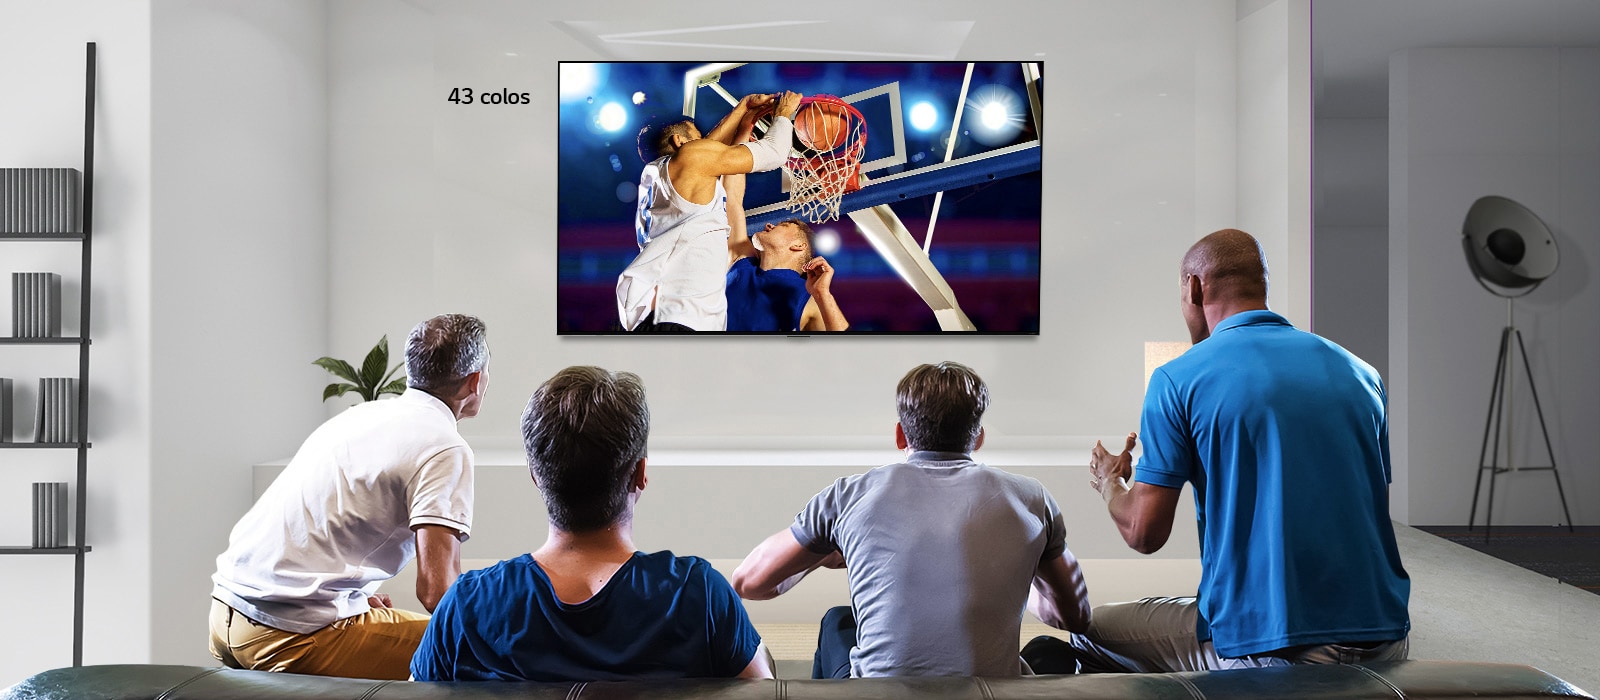 Egy falra rögzített TV látható hátulnézetben, a TV-ben egy kosárlabda-mérkőzés megy, amelyet négy férfi néz. Balra-jobbra görgetve látható a 43 colos és 86 colos képernyő mérete közötti különbség.